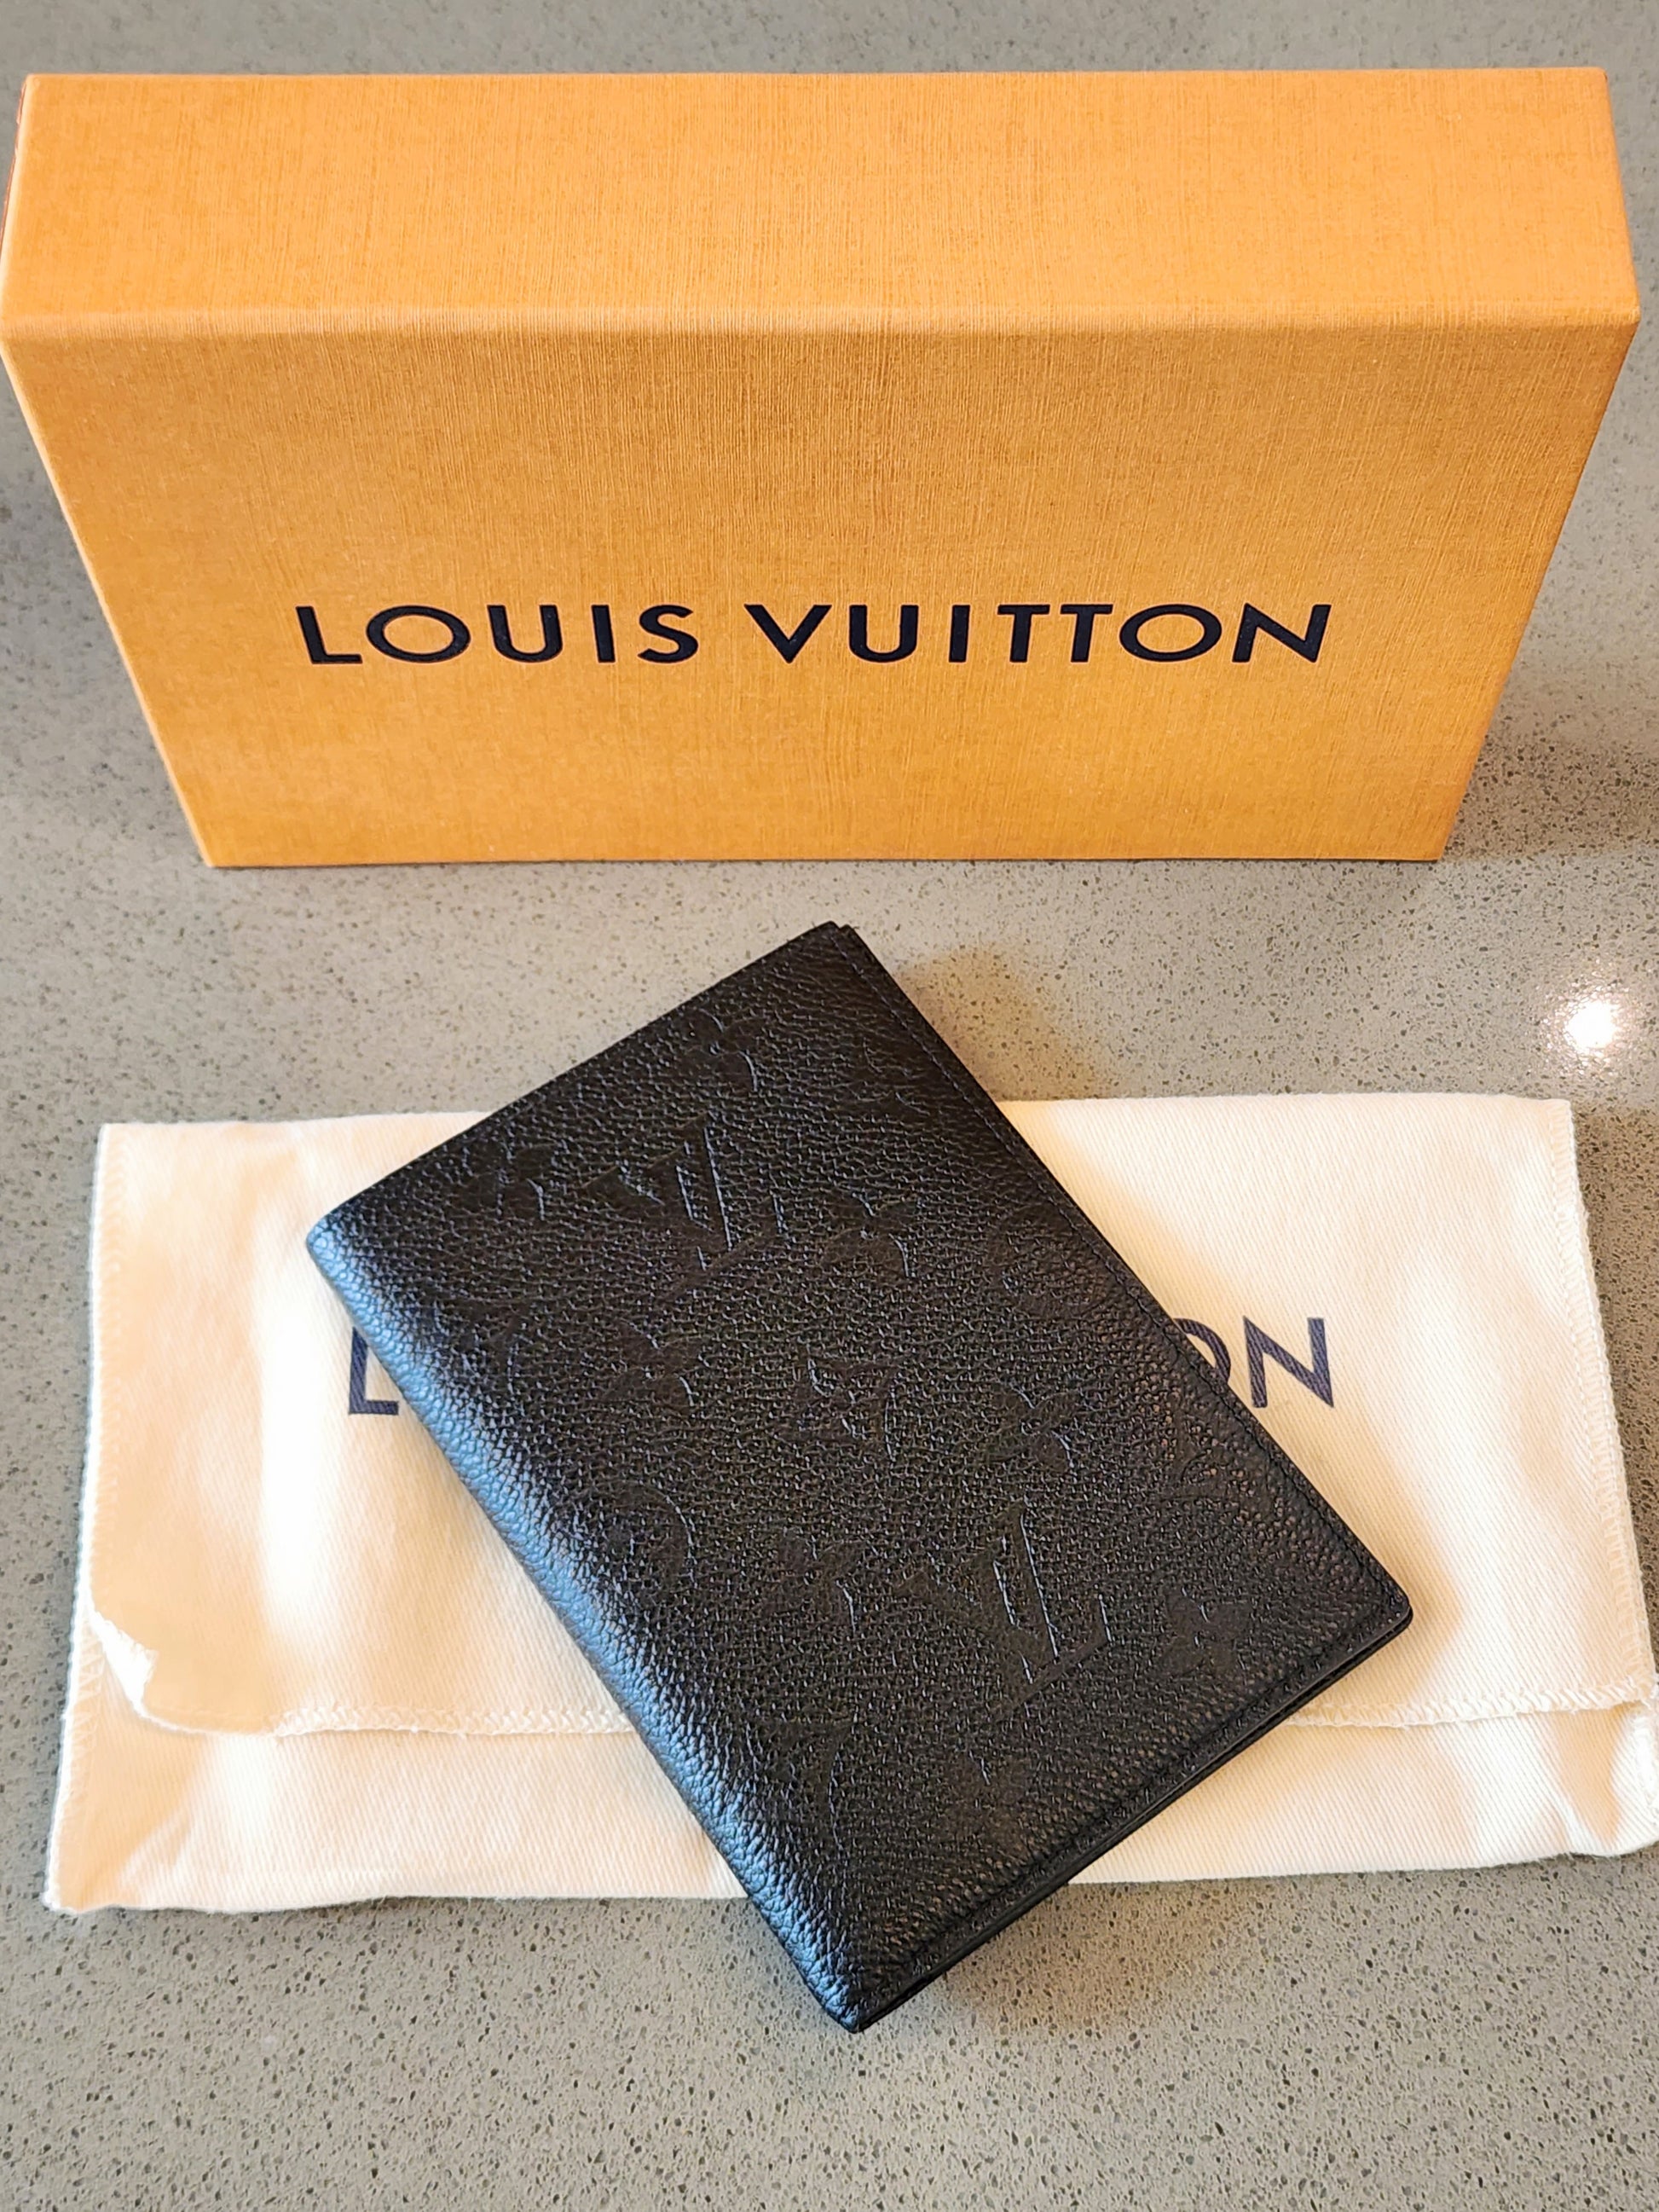 Shop Louis Vuitton MONOGRAM EMPREINTE Passport cover (M63914) by SpainSol